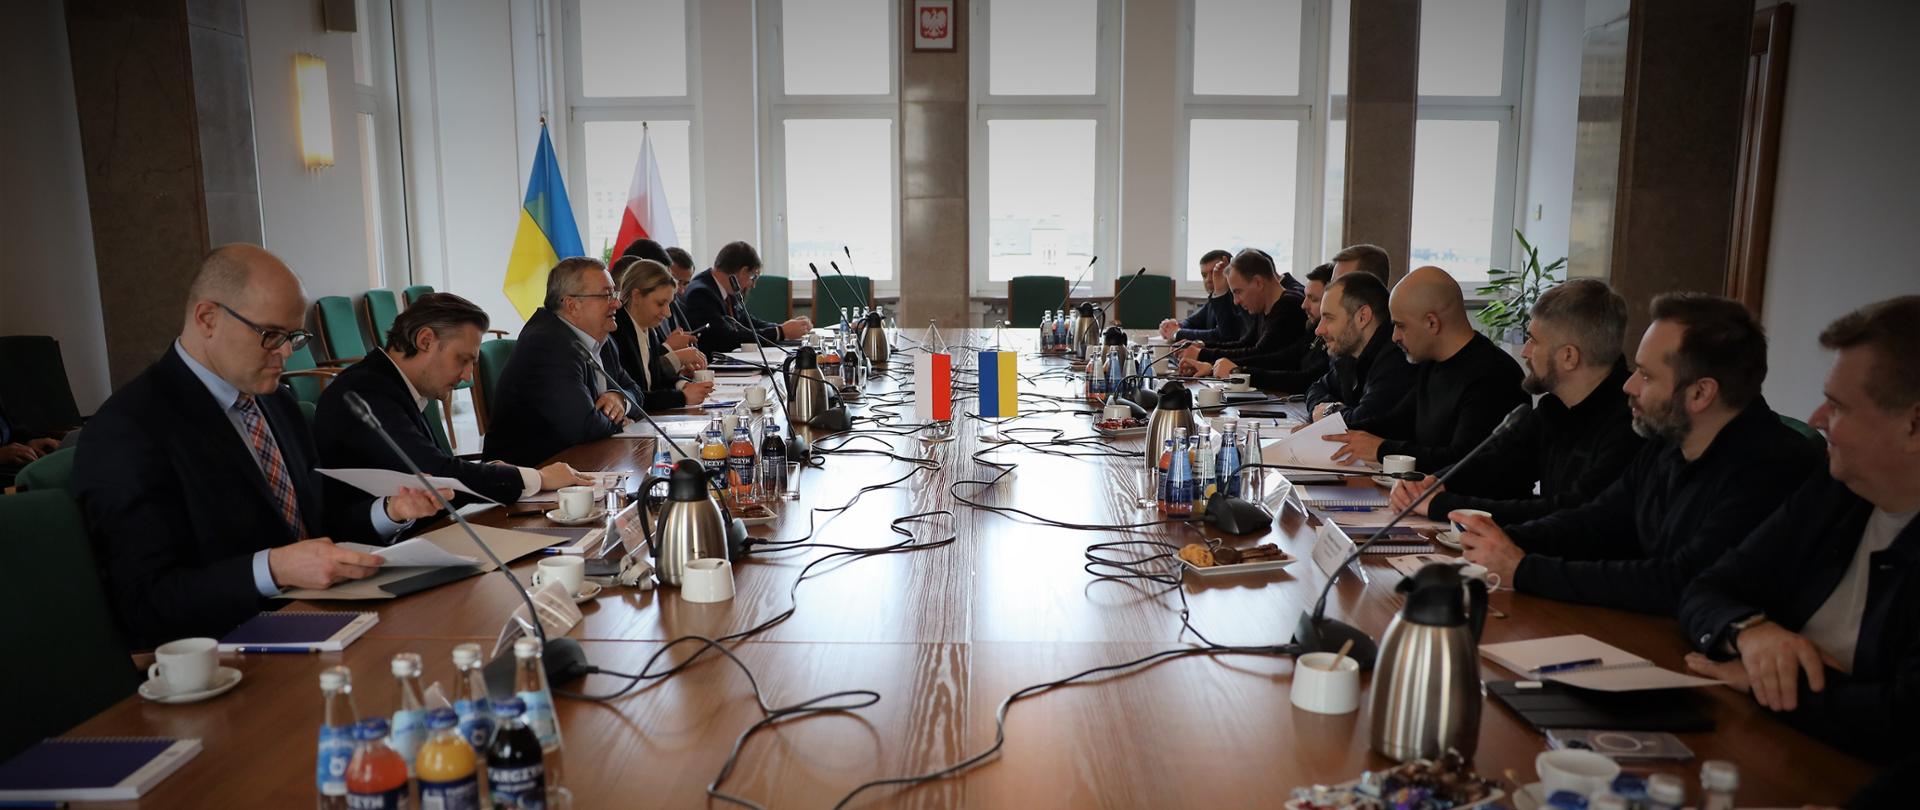 Spotkanie ministrów ds. transportu Polski i Ukrainy w Warszawie